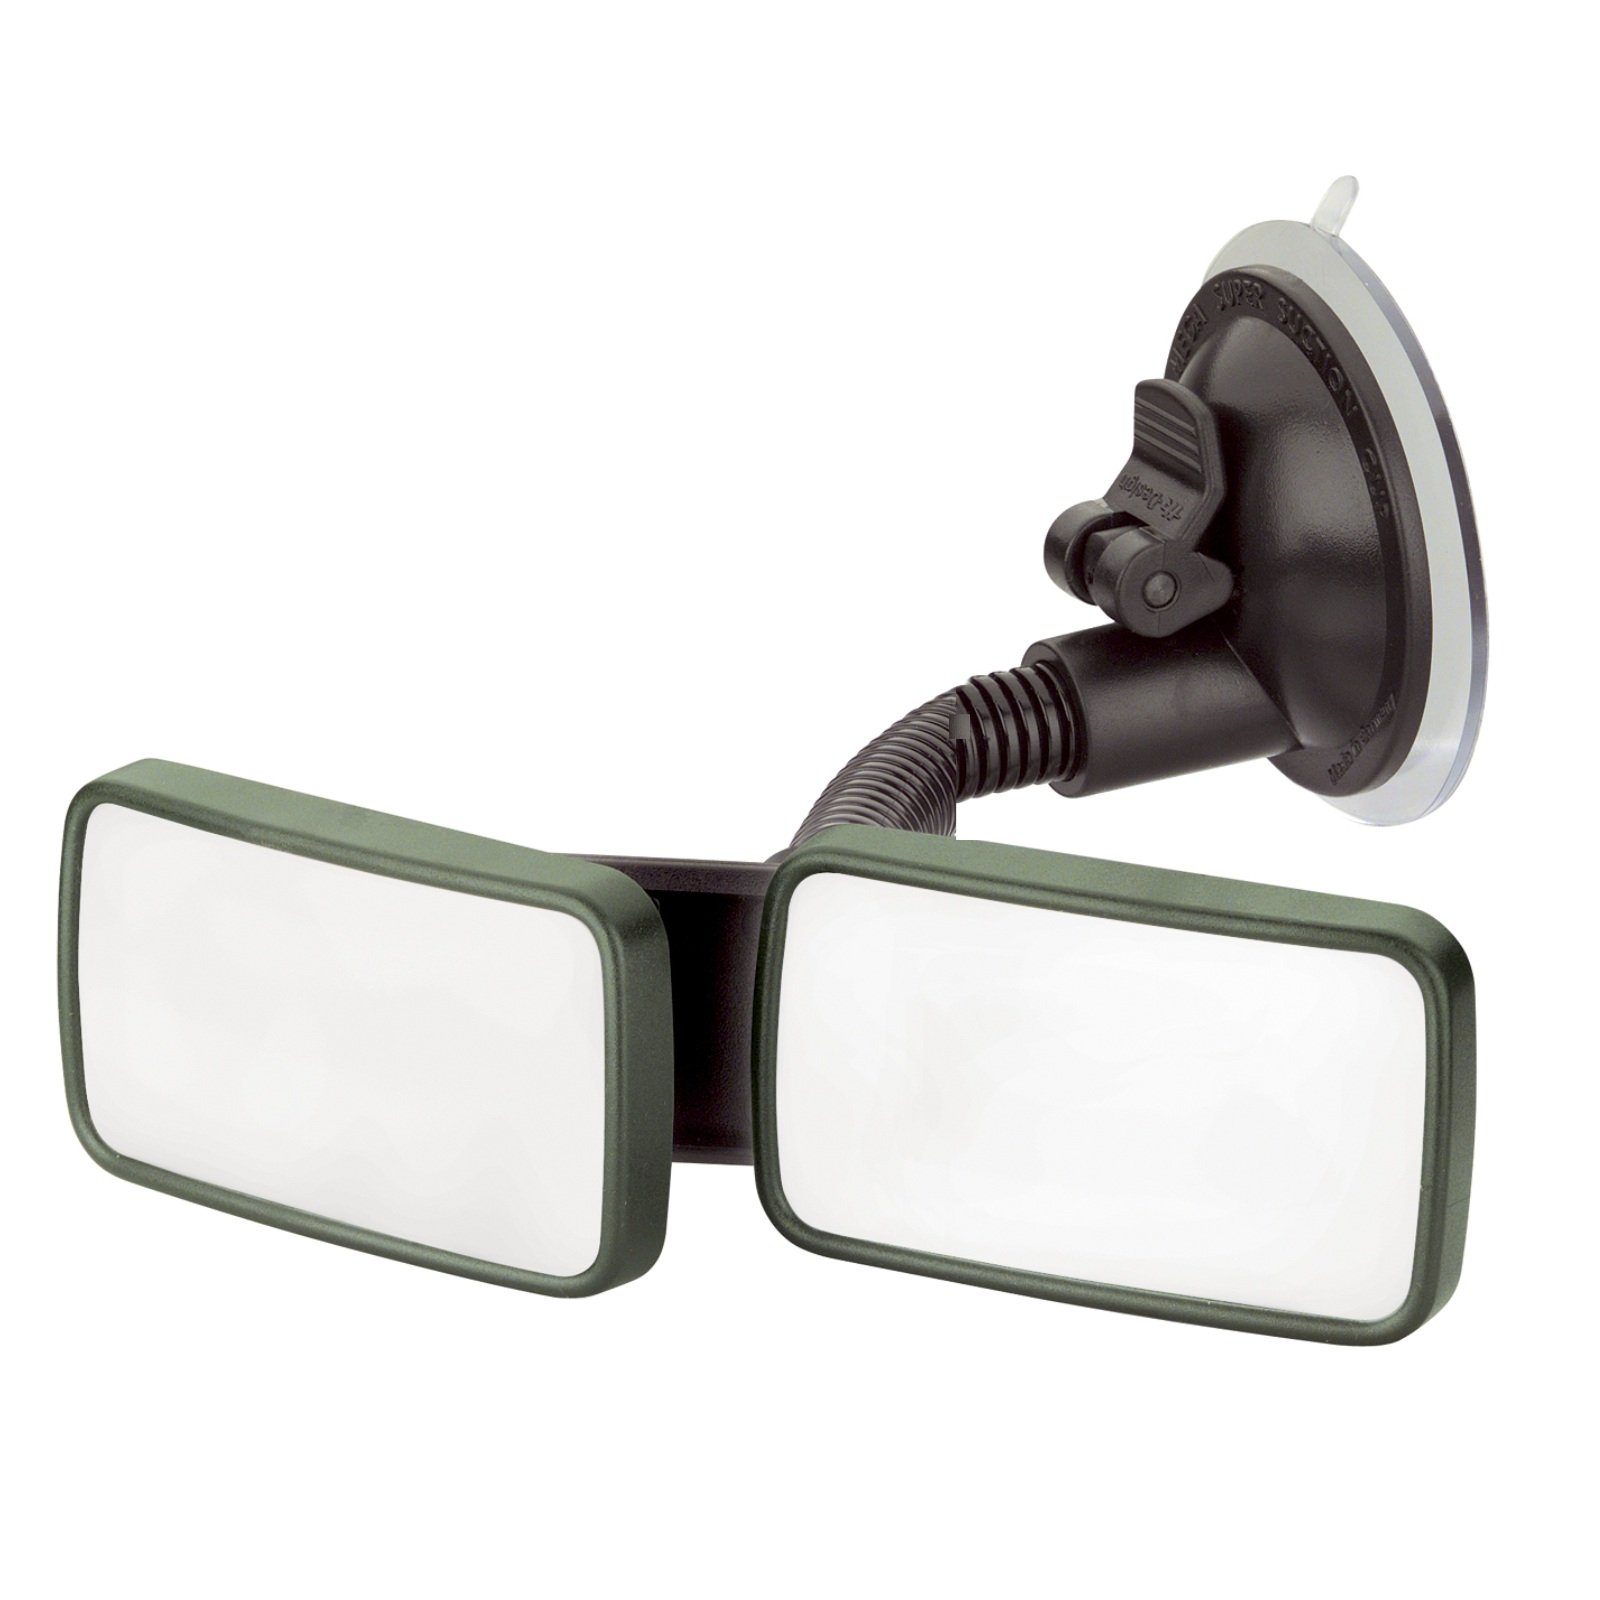 HR Autocomfort Spiegel Grüner Innenspiegel Doppelspiegel Spiegel mit beweglichem Schwanenhals | Spiegel